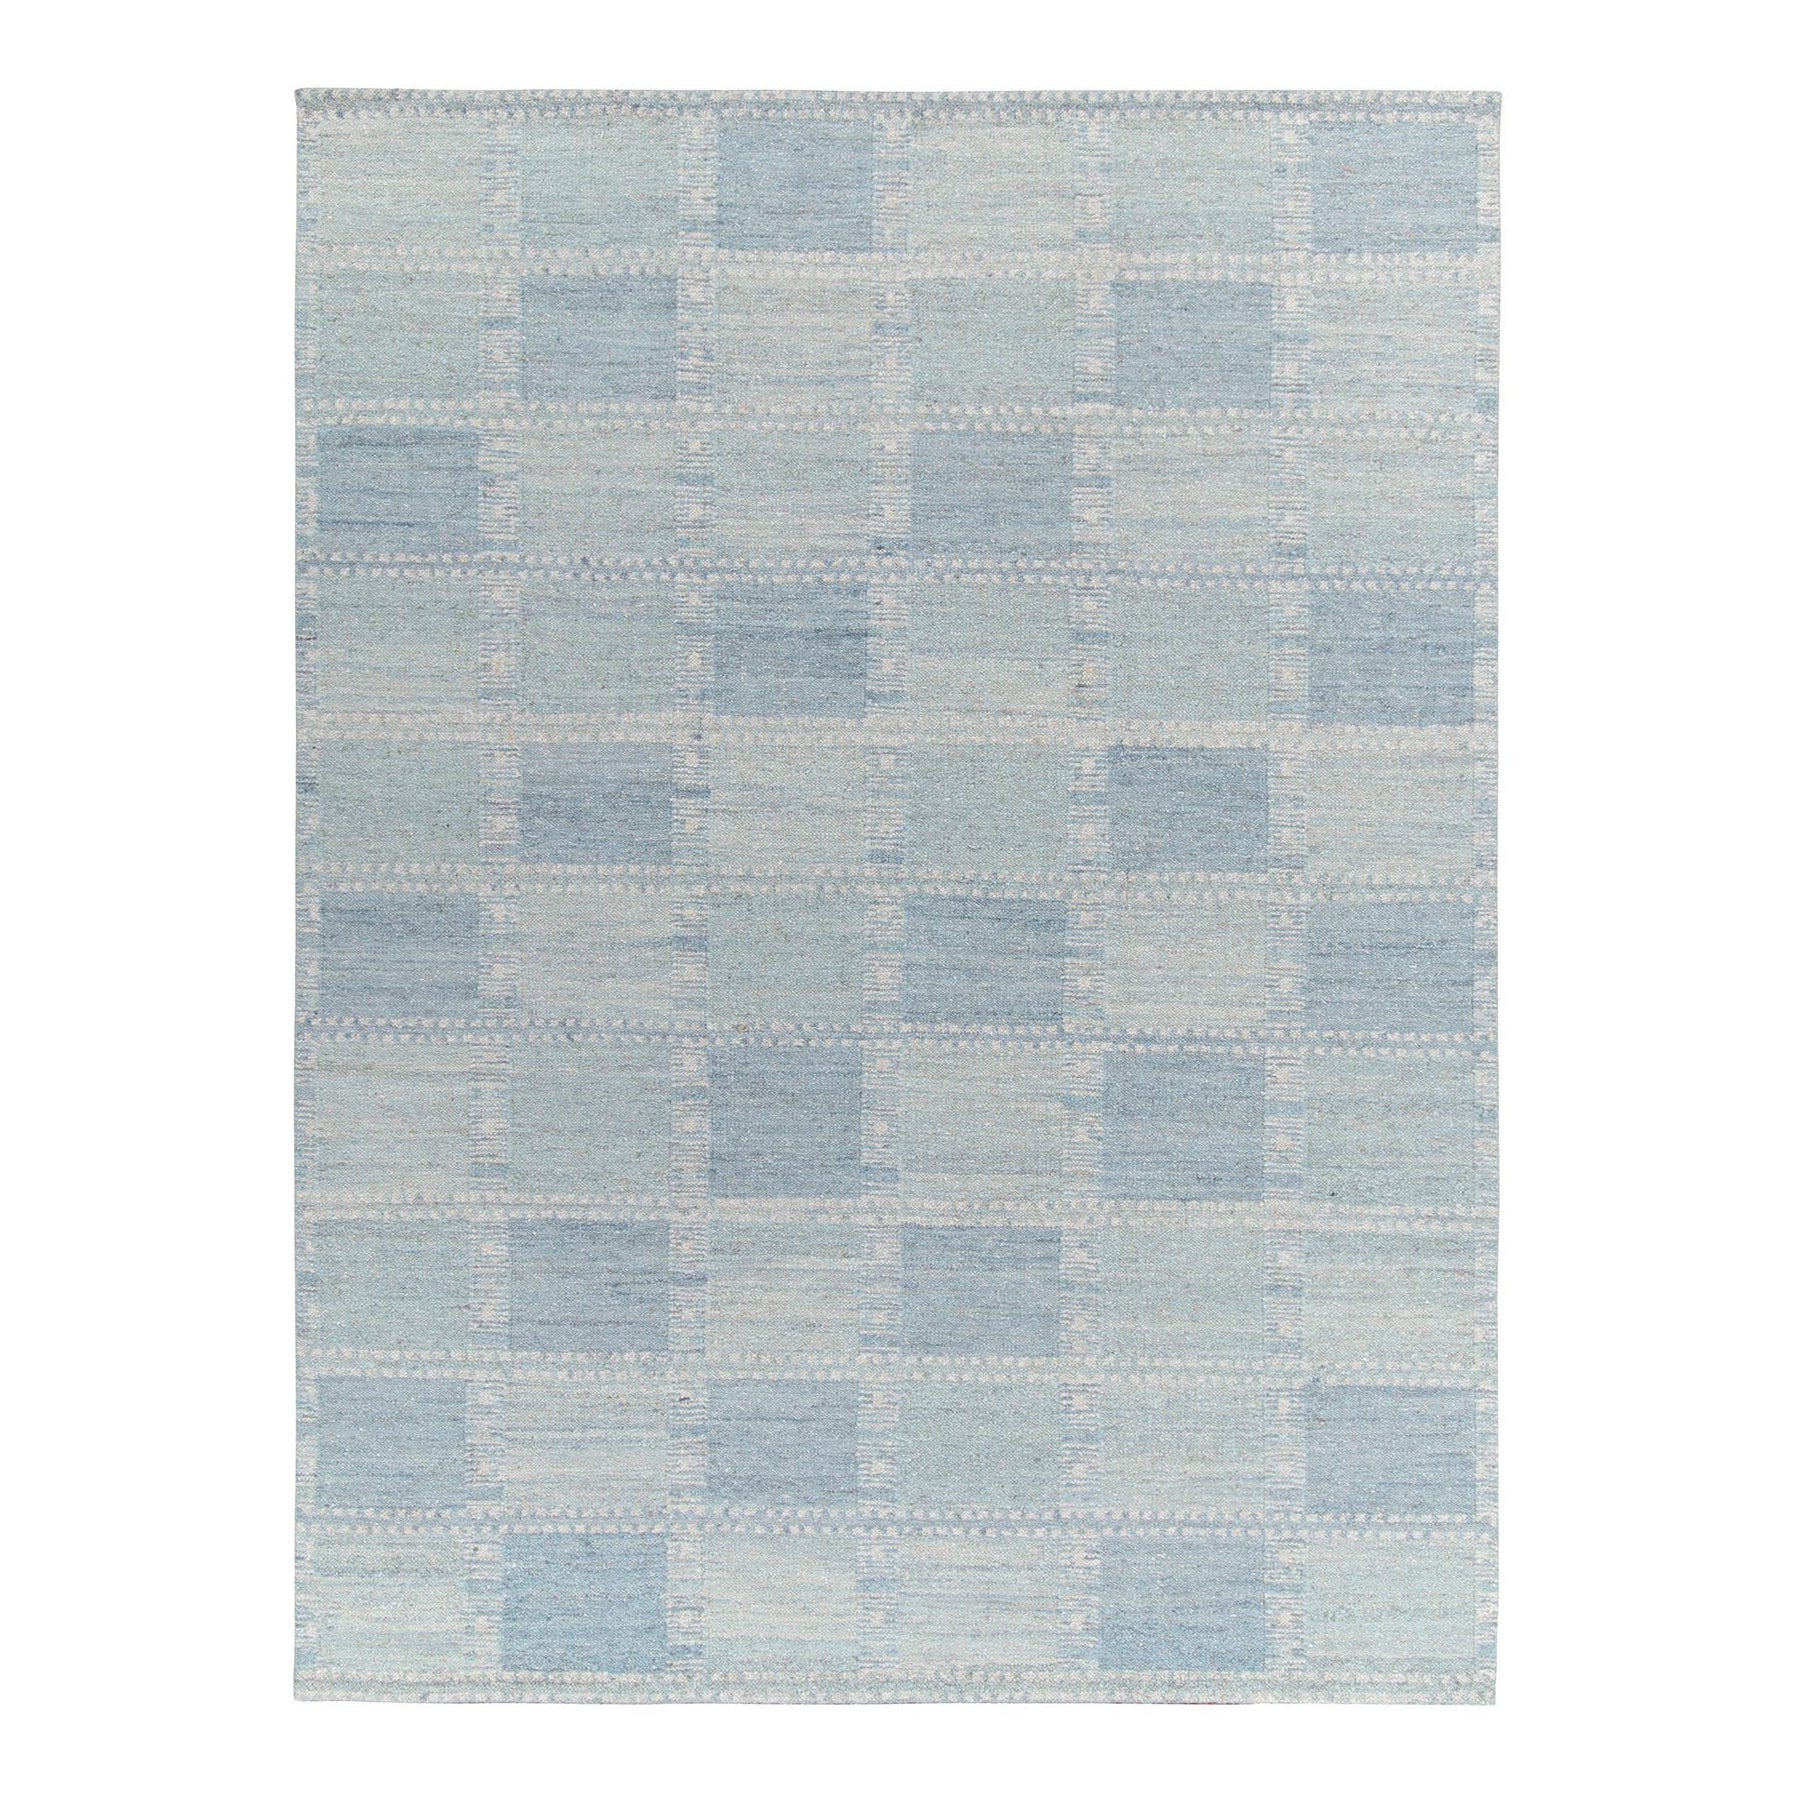 Handwoven Scandinavian Style flat weave in Blue Geometric Pattern by Rug & Kilim